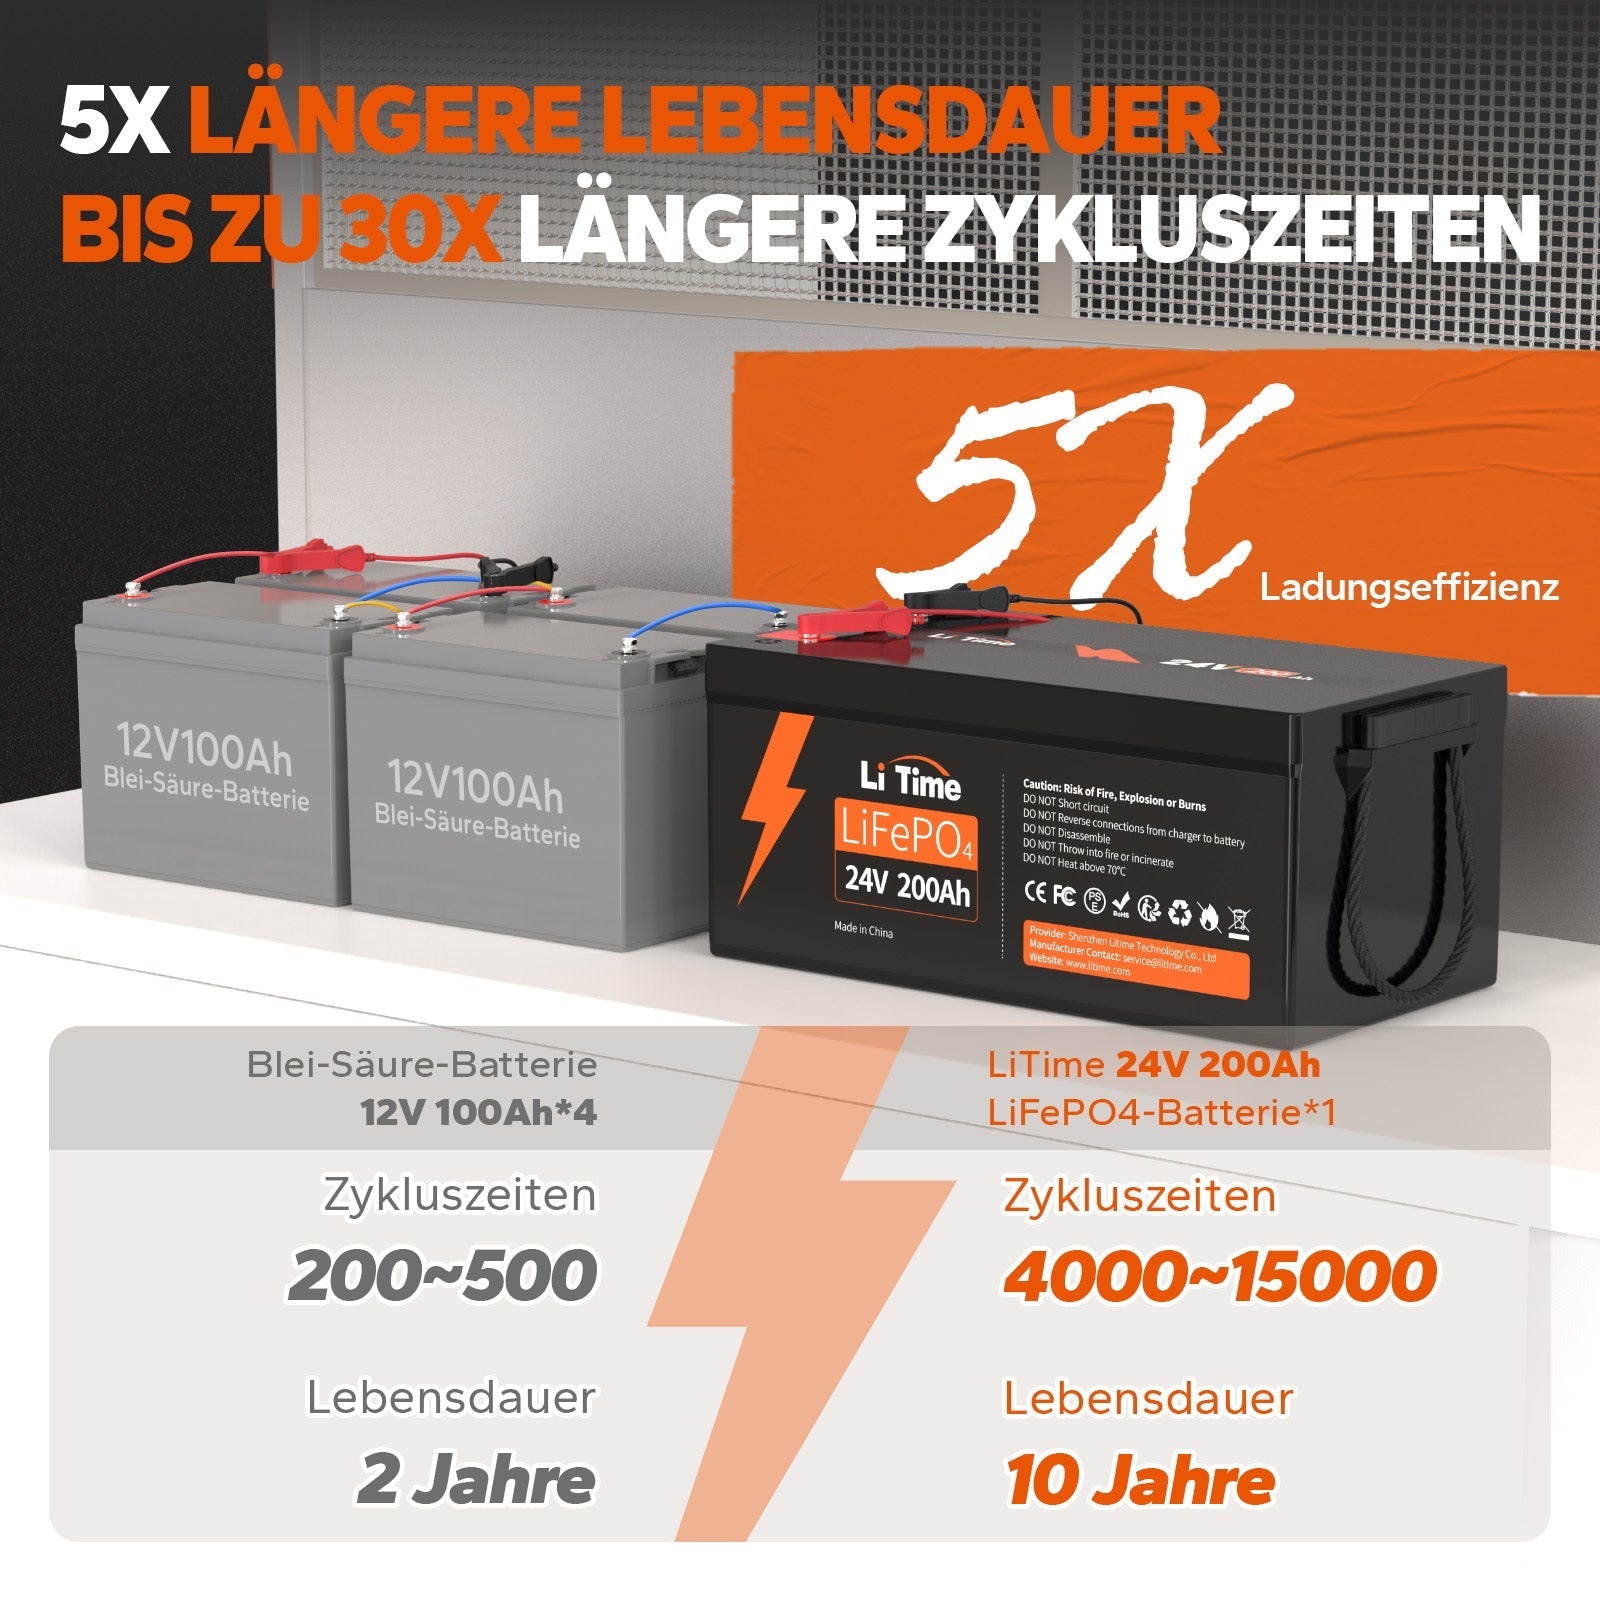 2 baterías LiTime 24V 200Ah🔥Y un cargador de 29,2V 20A gratis para ti🔥